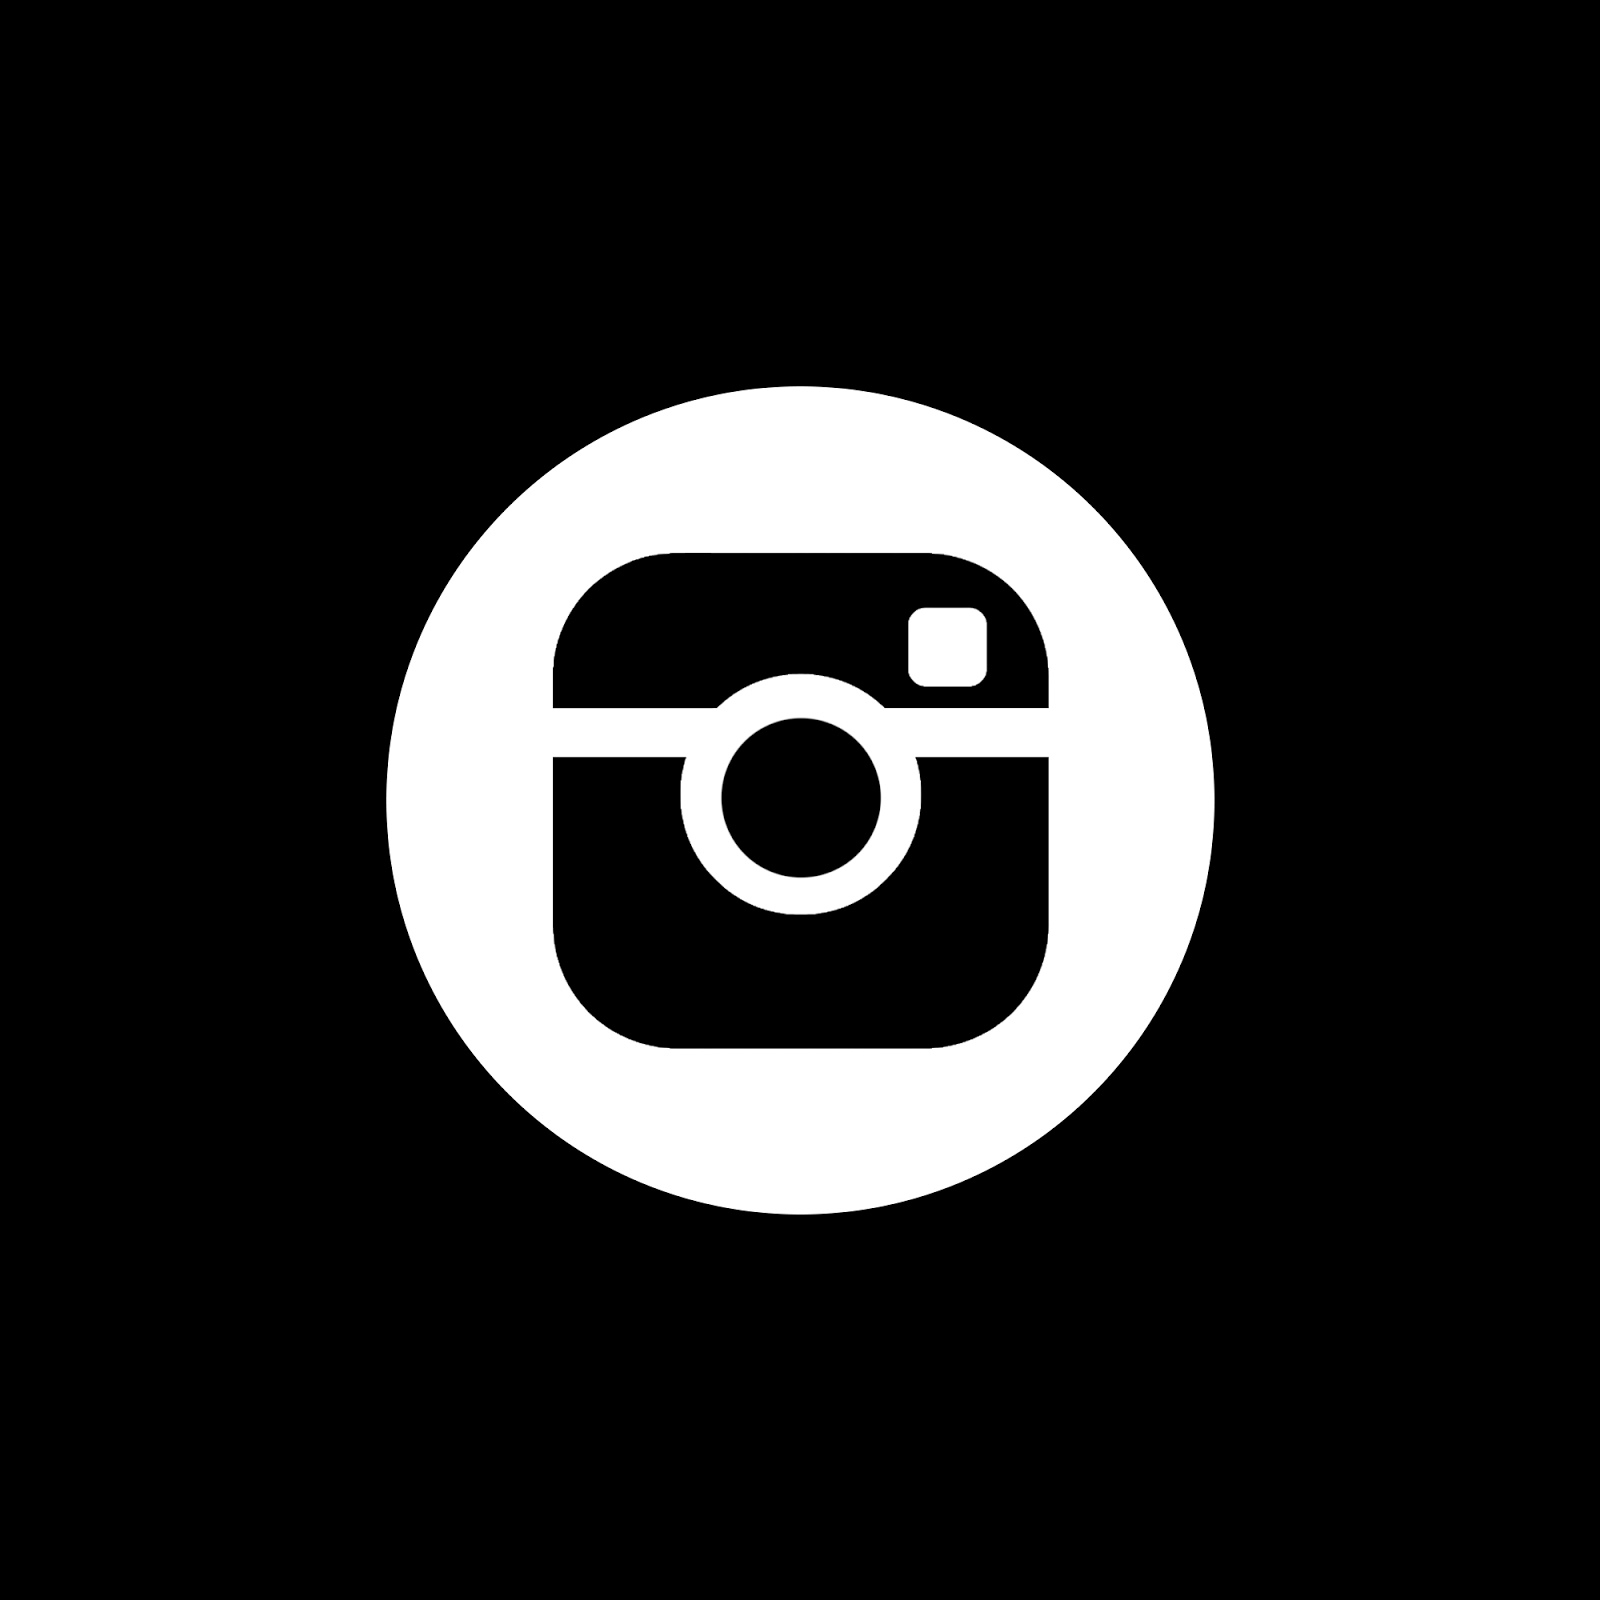 Get White Instagram Logo Png Black Background Background